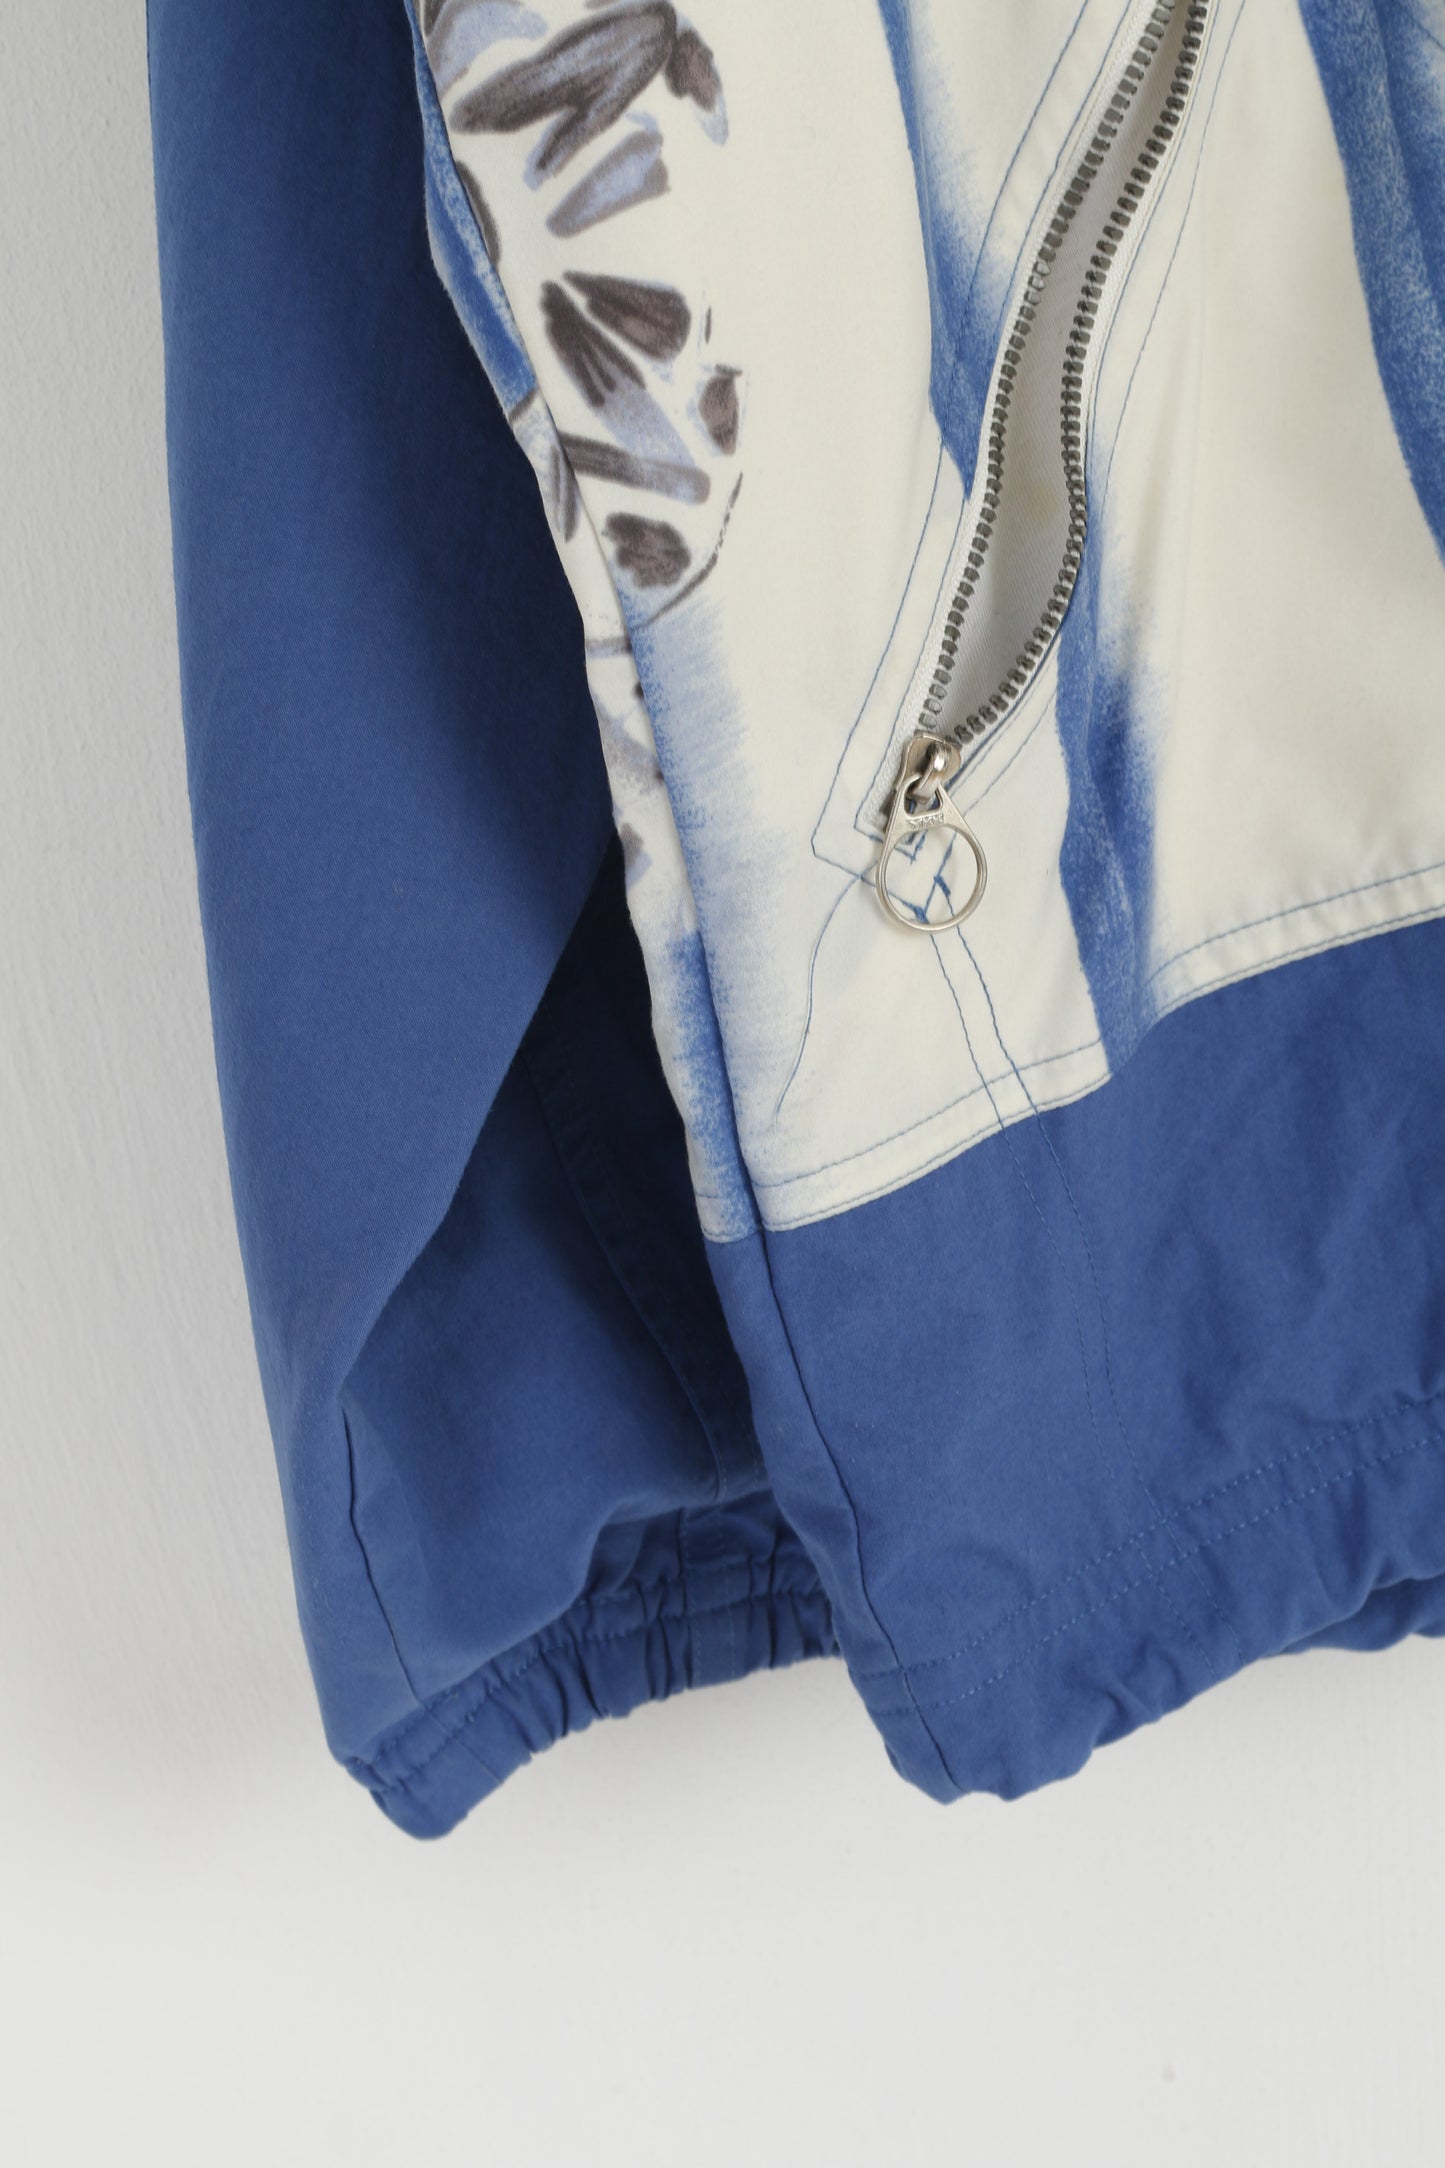 Giacca Adidas da donna 10 38 S. Top retrò leggero in nylon blu vintage con cerniera completa